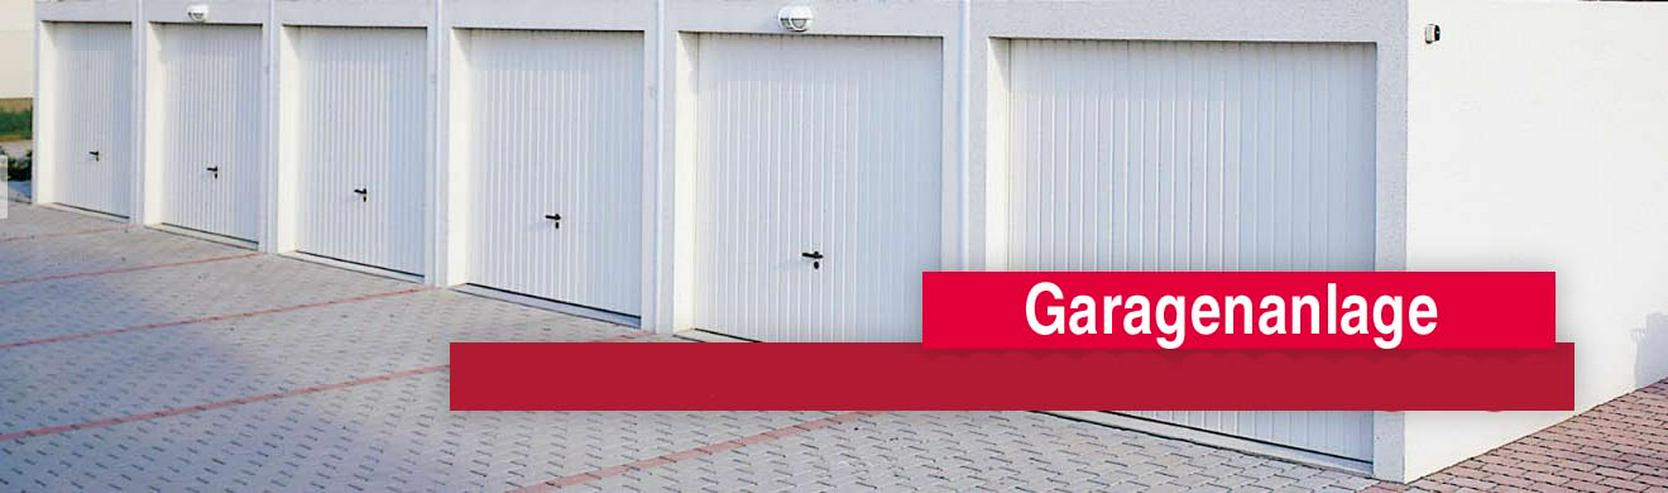 27 ZAPF-Garagen/Stellplätze/Abstellräume - Garage & Stellplatz mieten - Bild 1